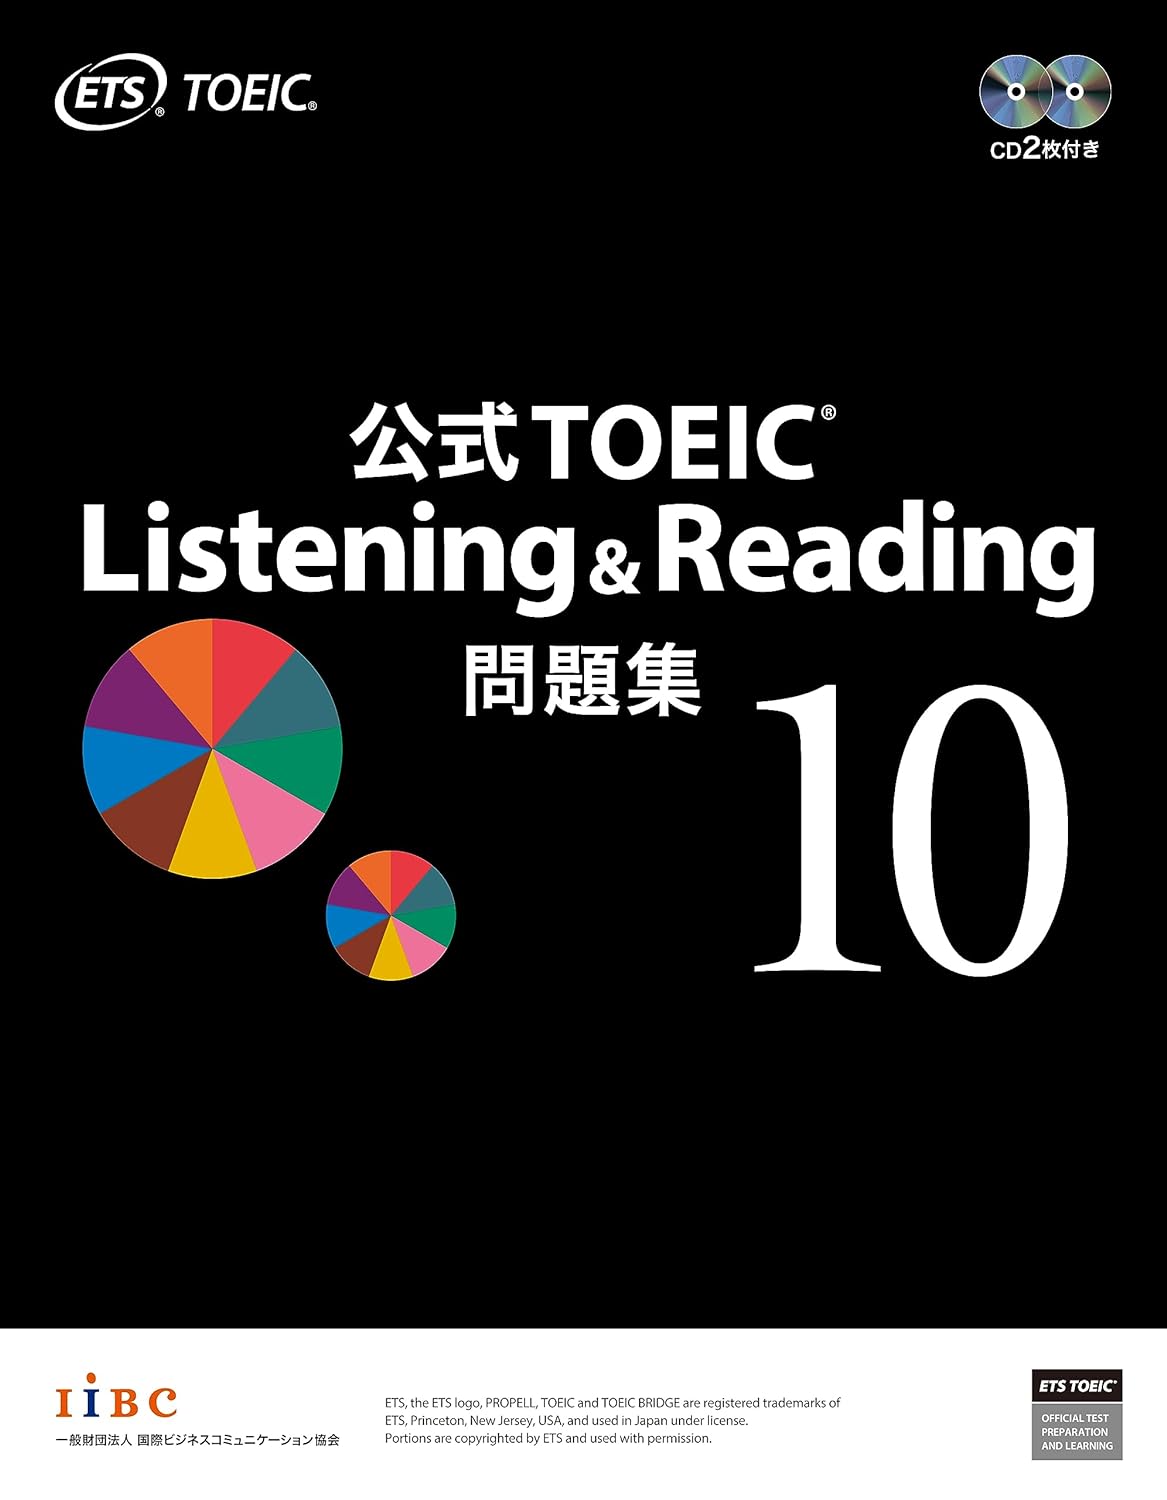 公式TOEIC Listening & Reading 問題集を使った学習 – 公式問題集2冊 ...